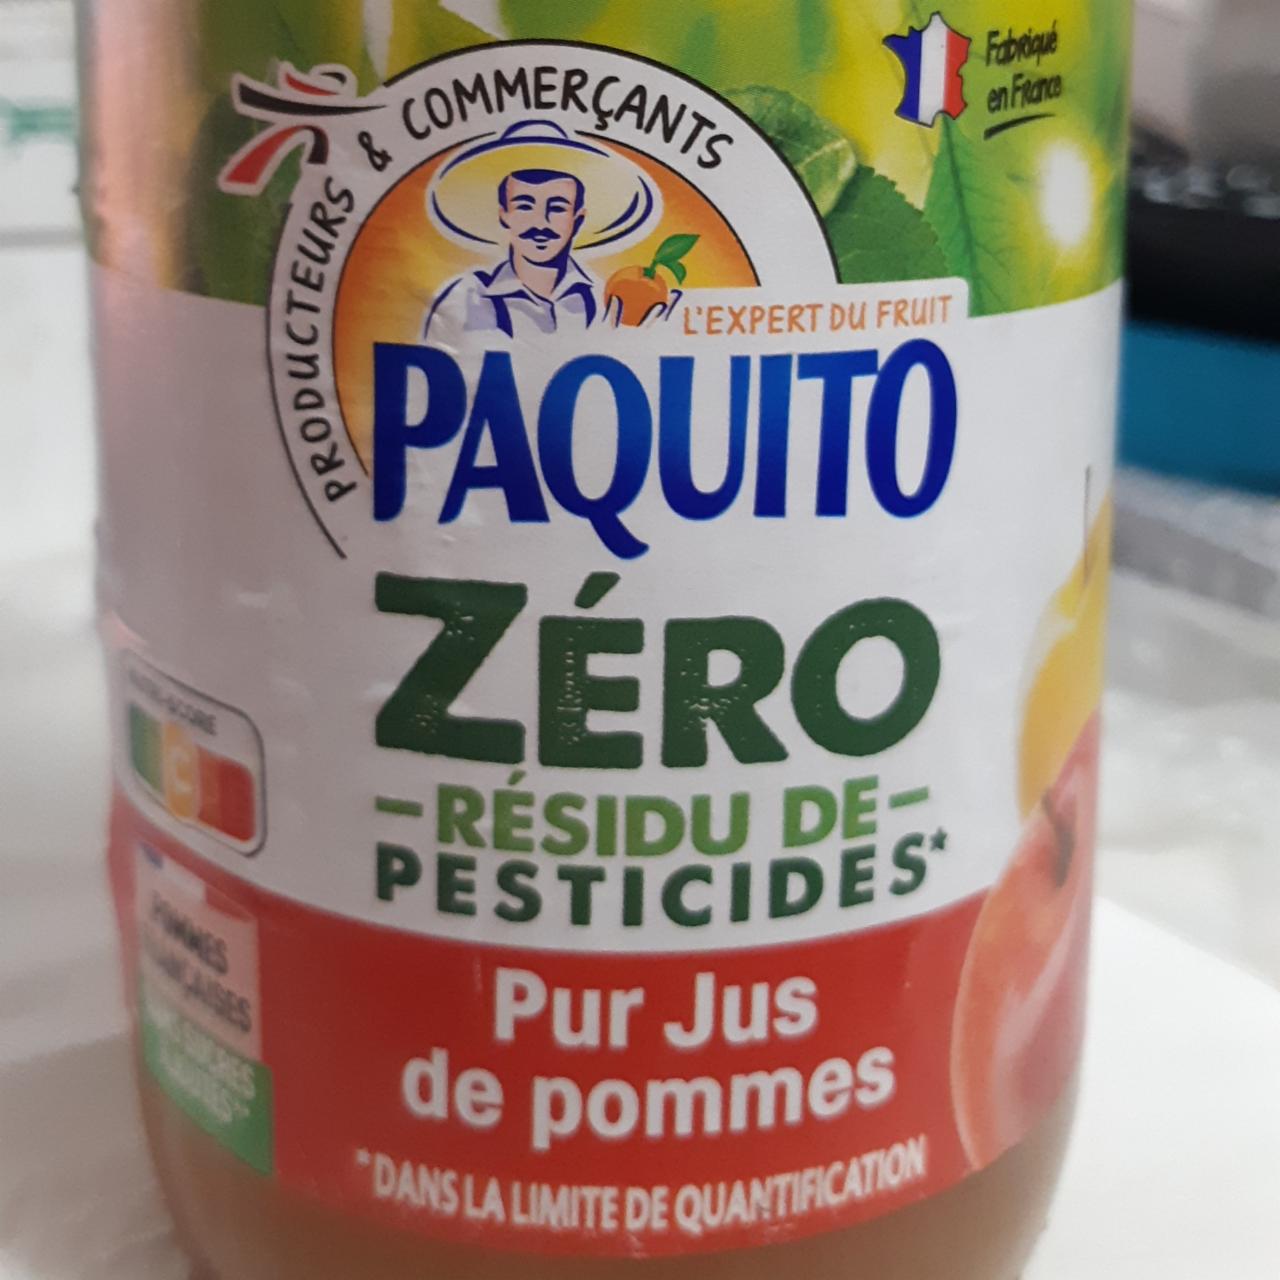 Fotografie - Pur jus de pommes Zéro résidu de pesticides Paquito